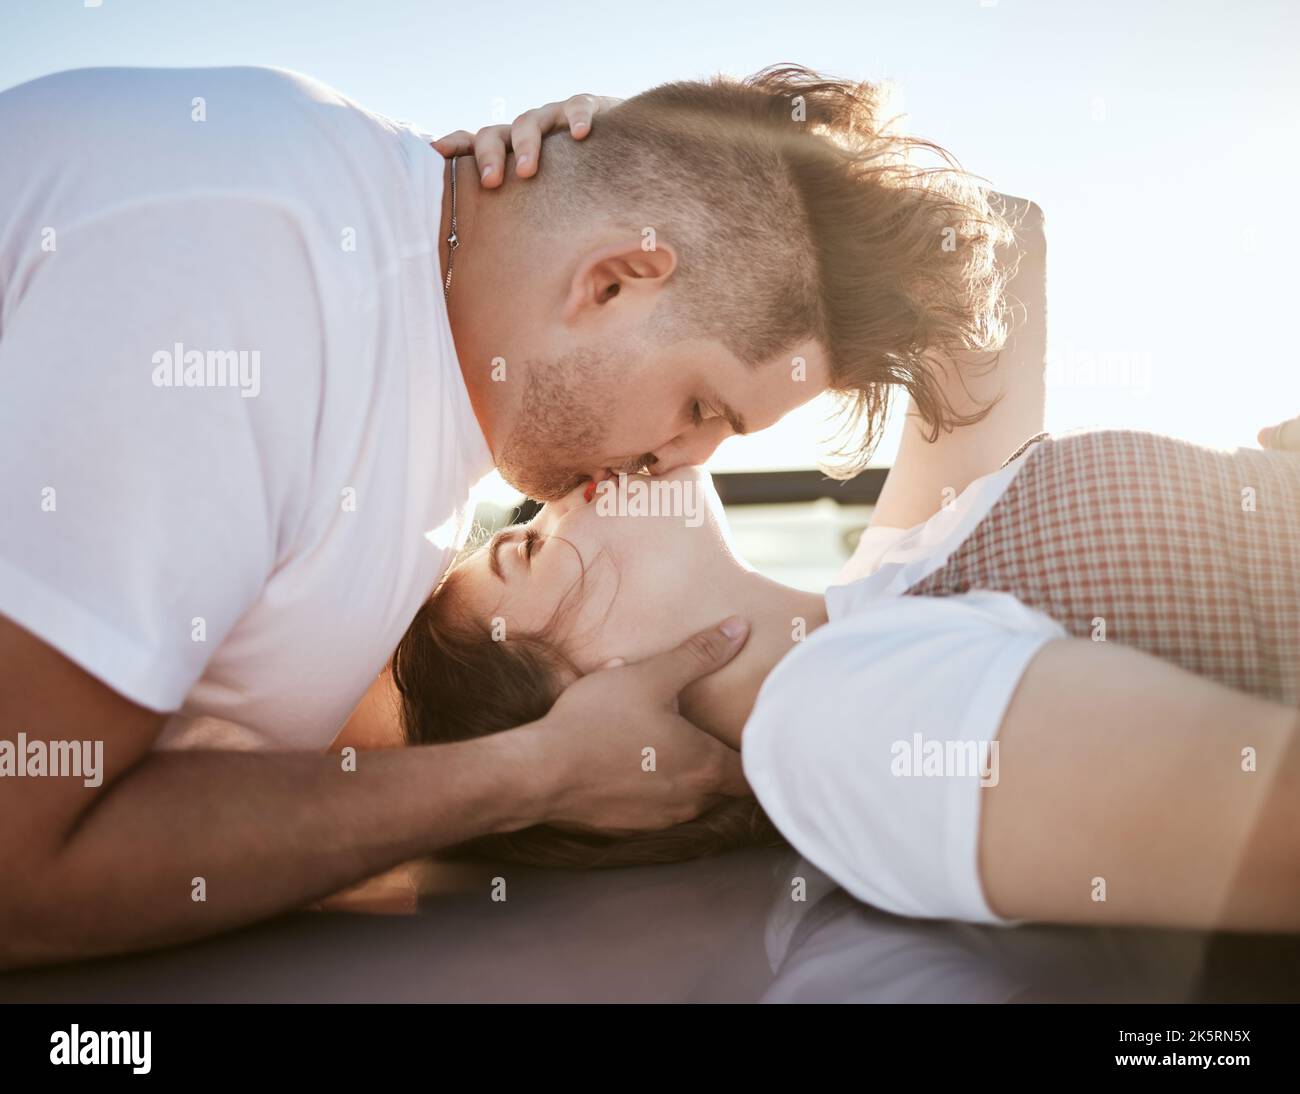 Liebe, Intimität und Paar küssen und entspannen sich gemeinsam im Freien, Lippen berühren und Spaß haben. Romantik, Flirten und Zuneigung von jungen Männern und Frauen Stockfoto